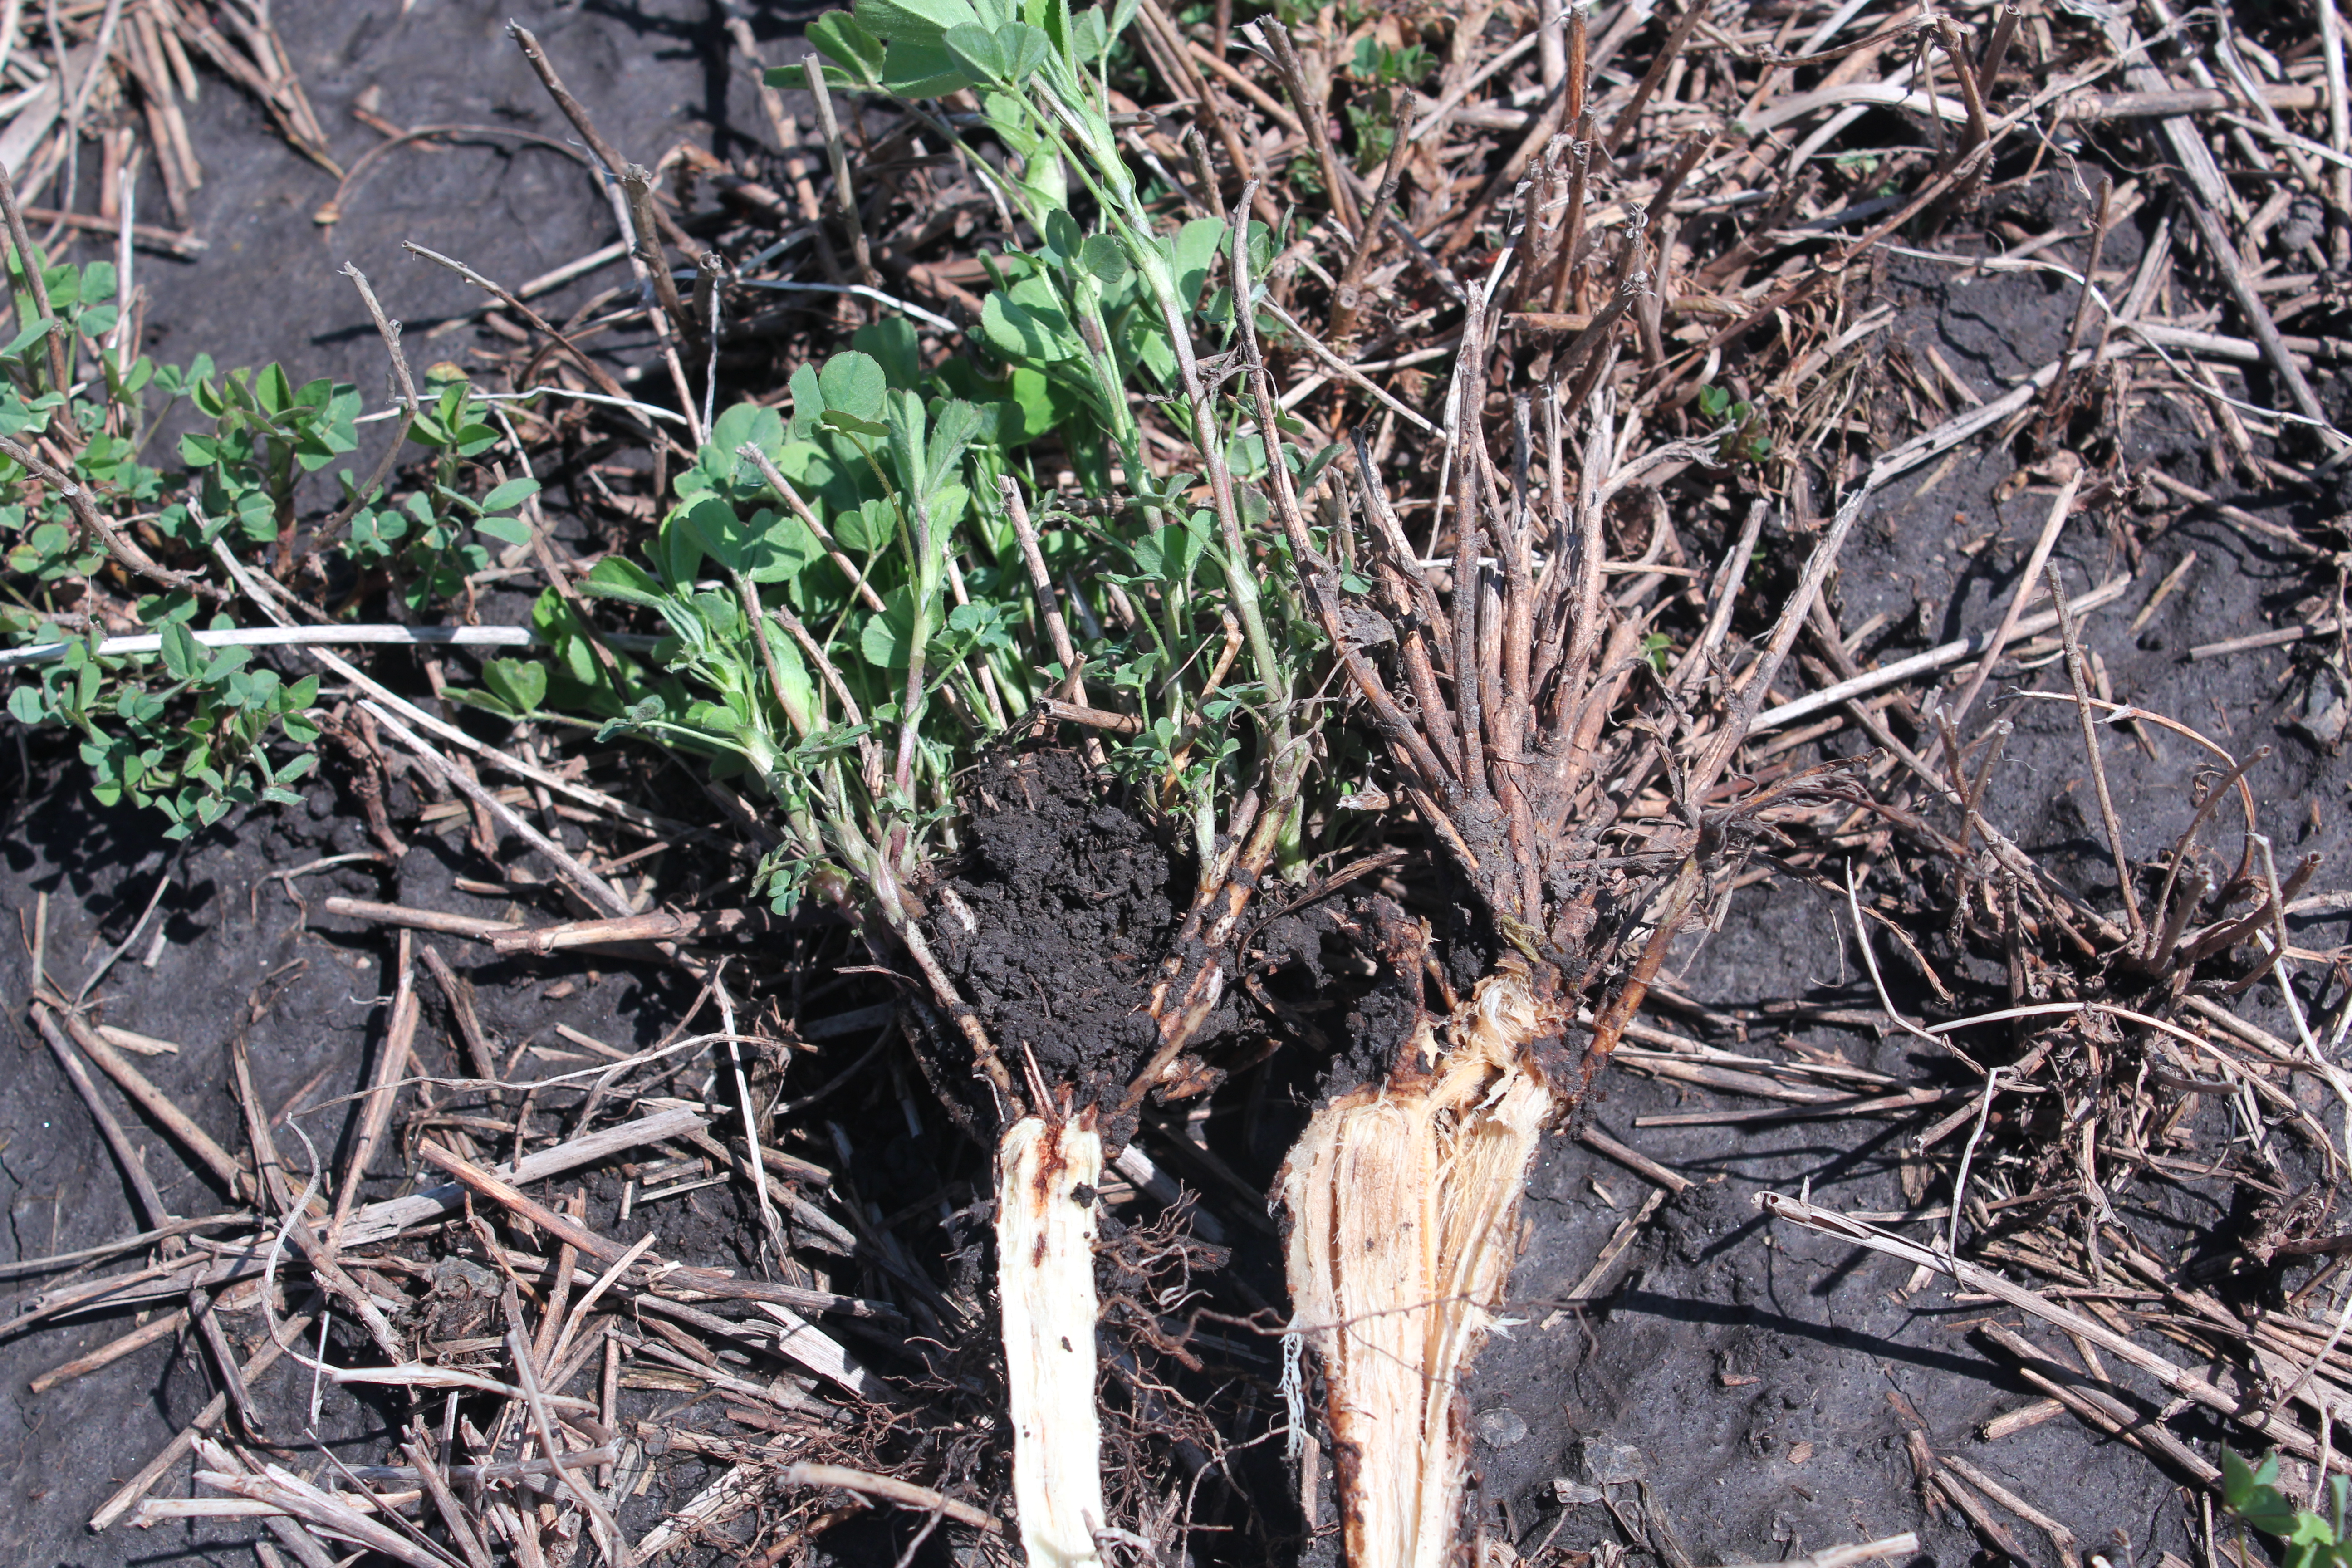 Healthy vs dead alfalfa roots